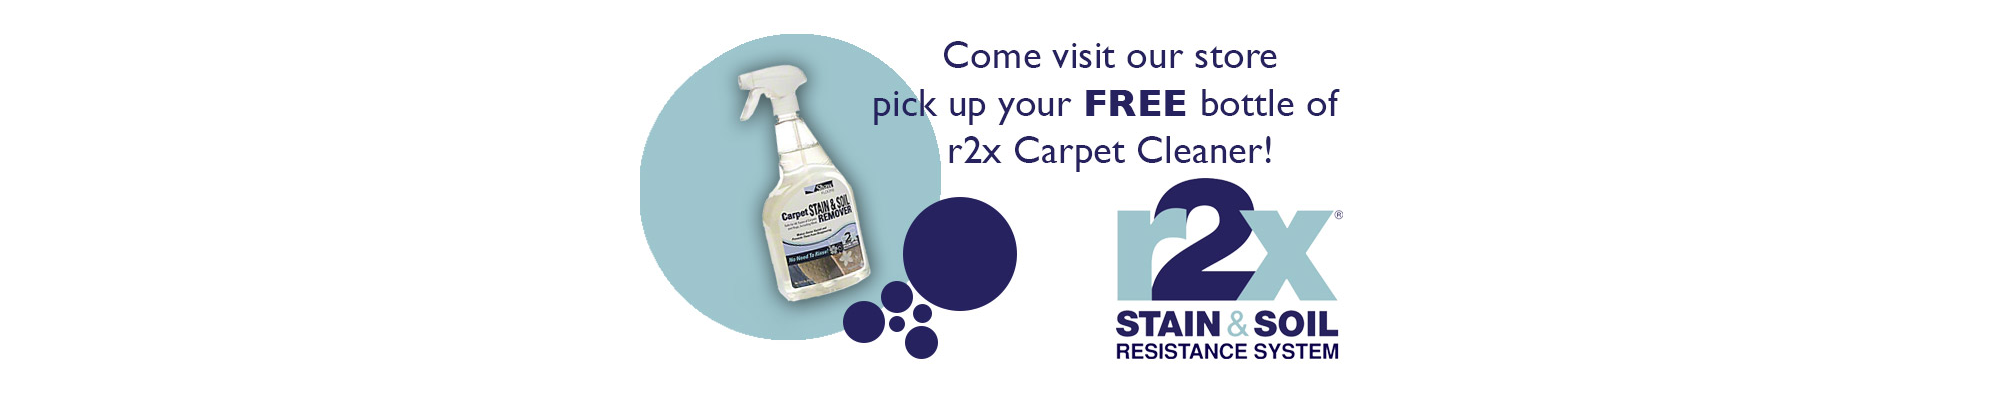 carpet cleaner offer - carpetilenet